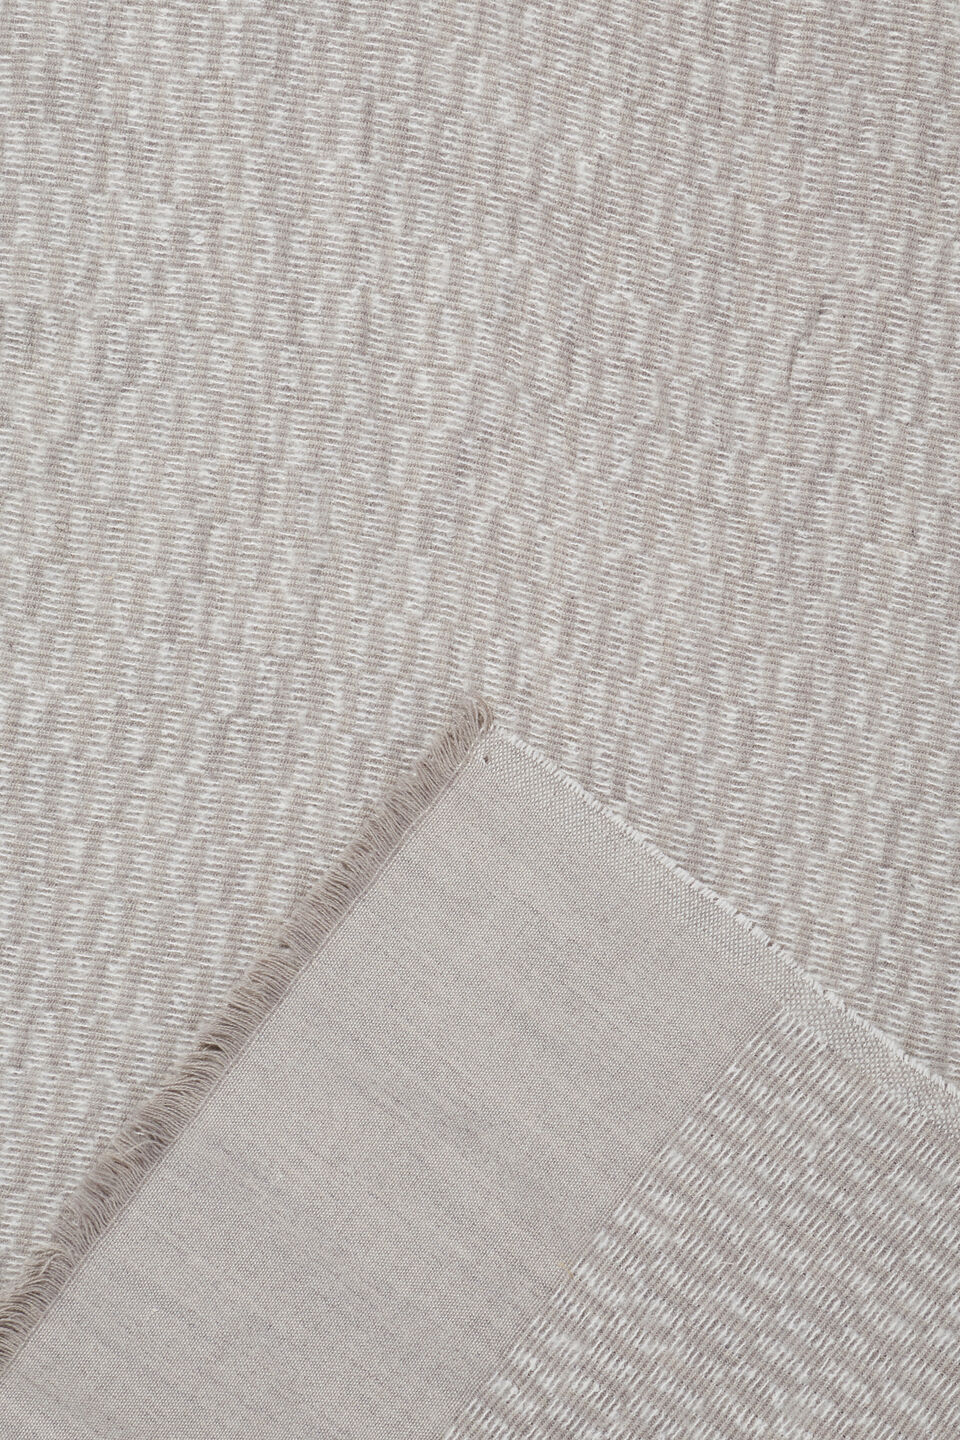 Wool Blend Scarf  Grey Multi